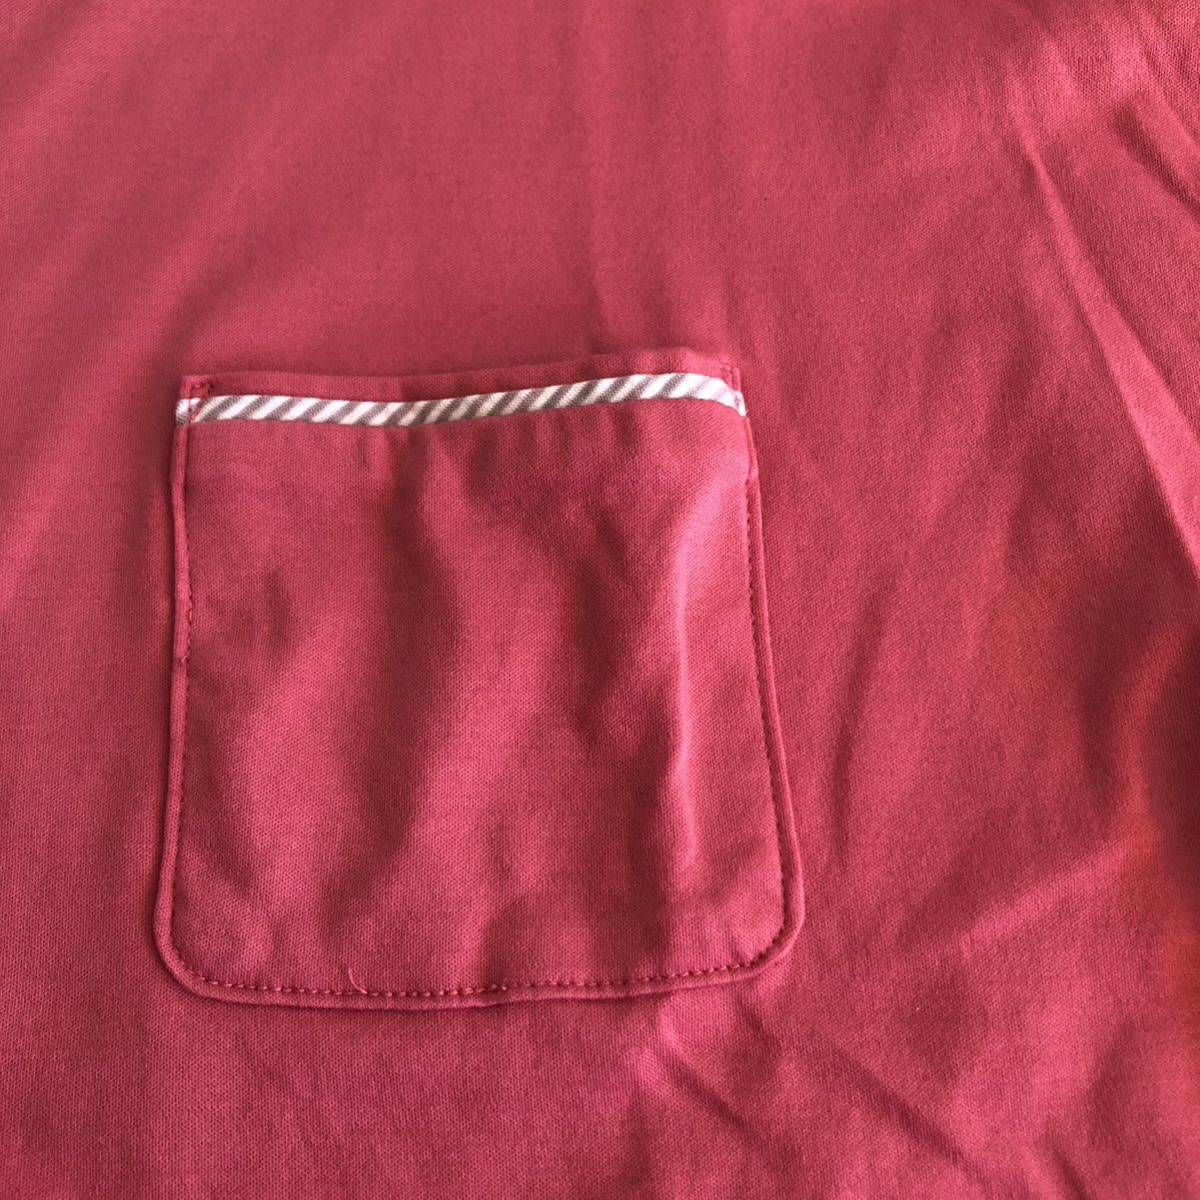 [ прекрасный товар ]McGREGOR*makrega-5 минут рукав футболка короткий рукав футболка M размер розовый карман футболка одноцветный женский Mac rega-